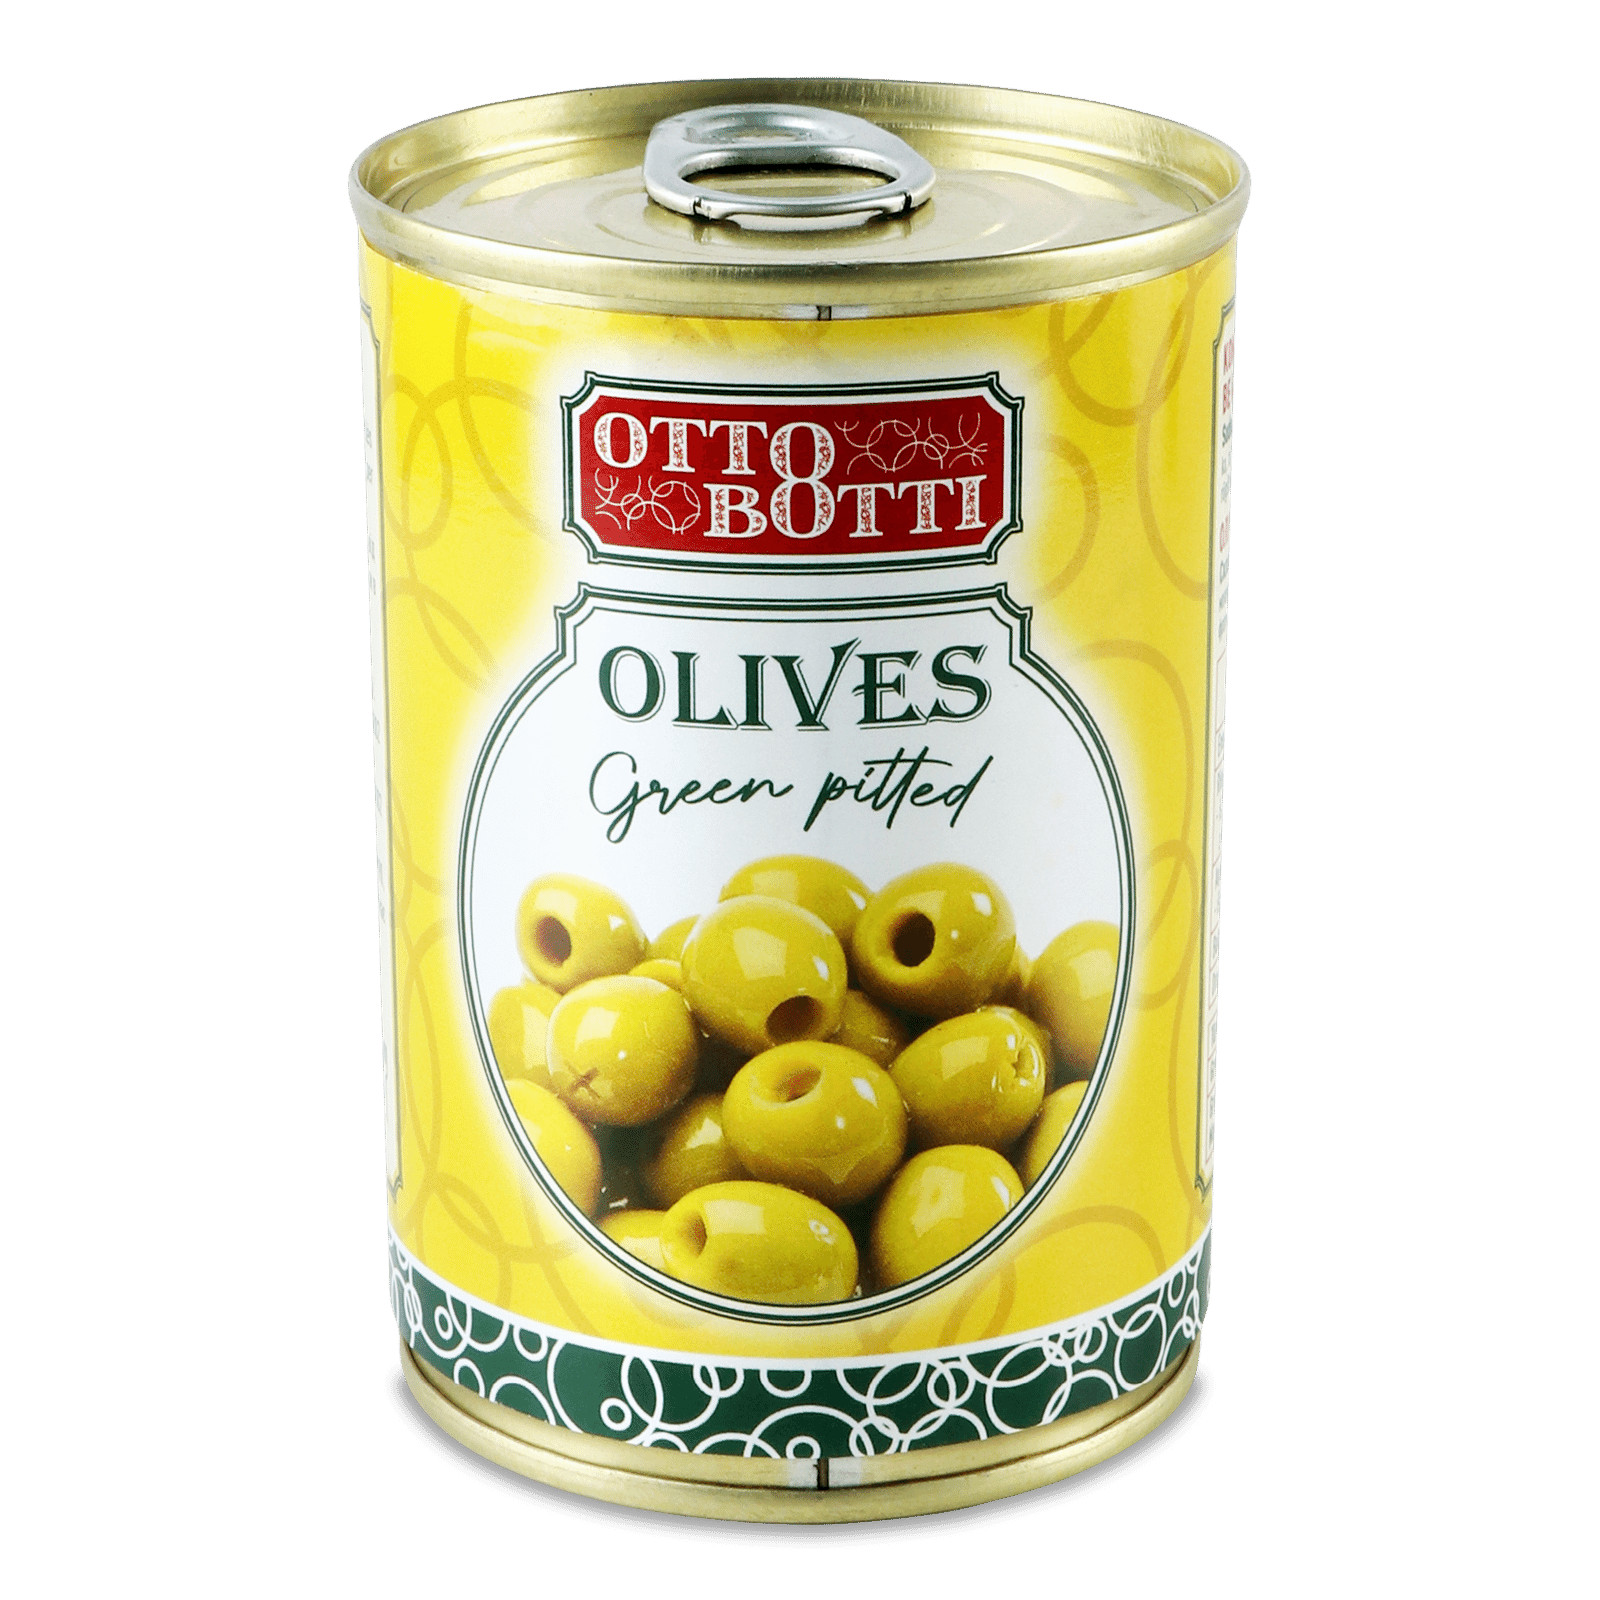 Оливки зелені Otto Botti без кісточок - 1